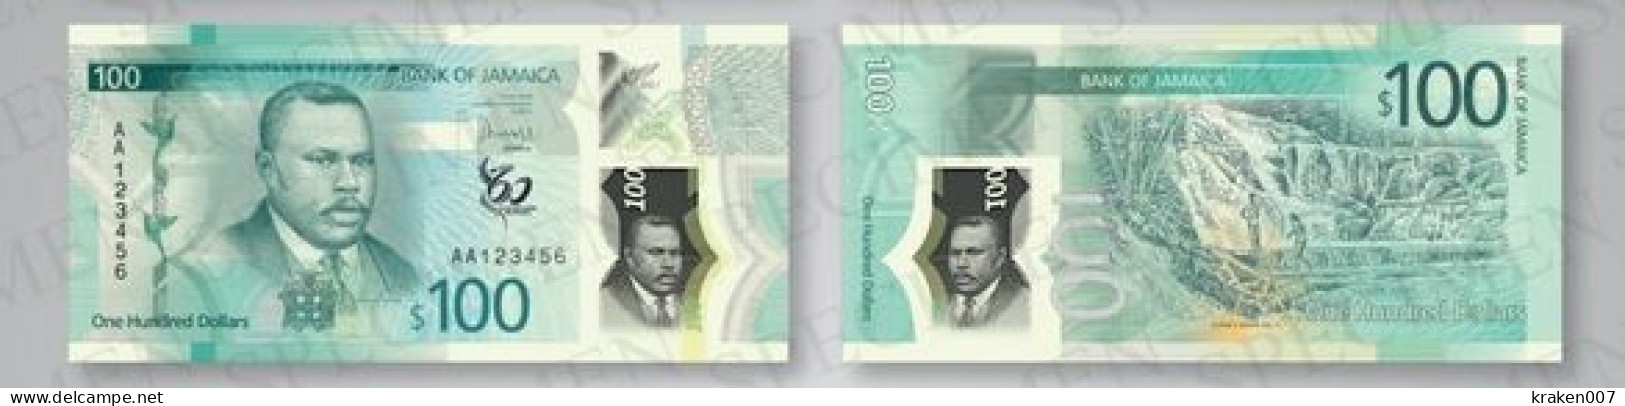 Jamaica 100 Dollars  P-97 (97a) -2022 (2023) UNC New! - Jamaica